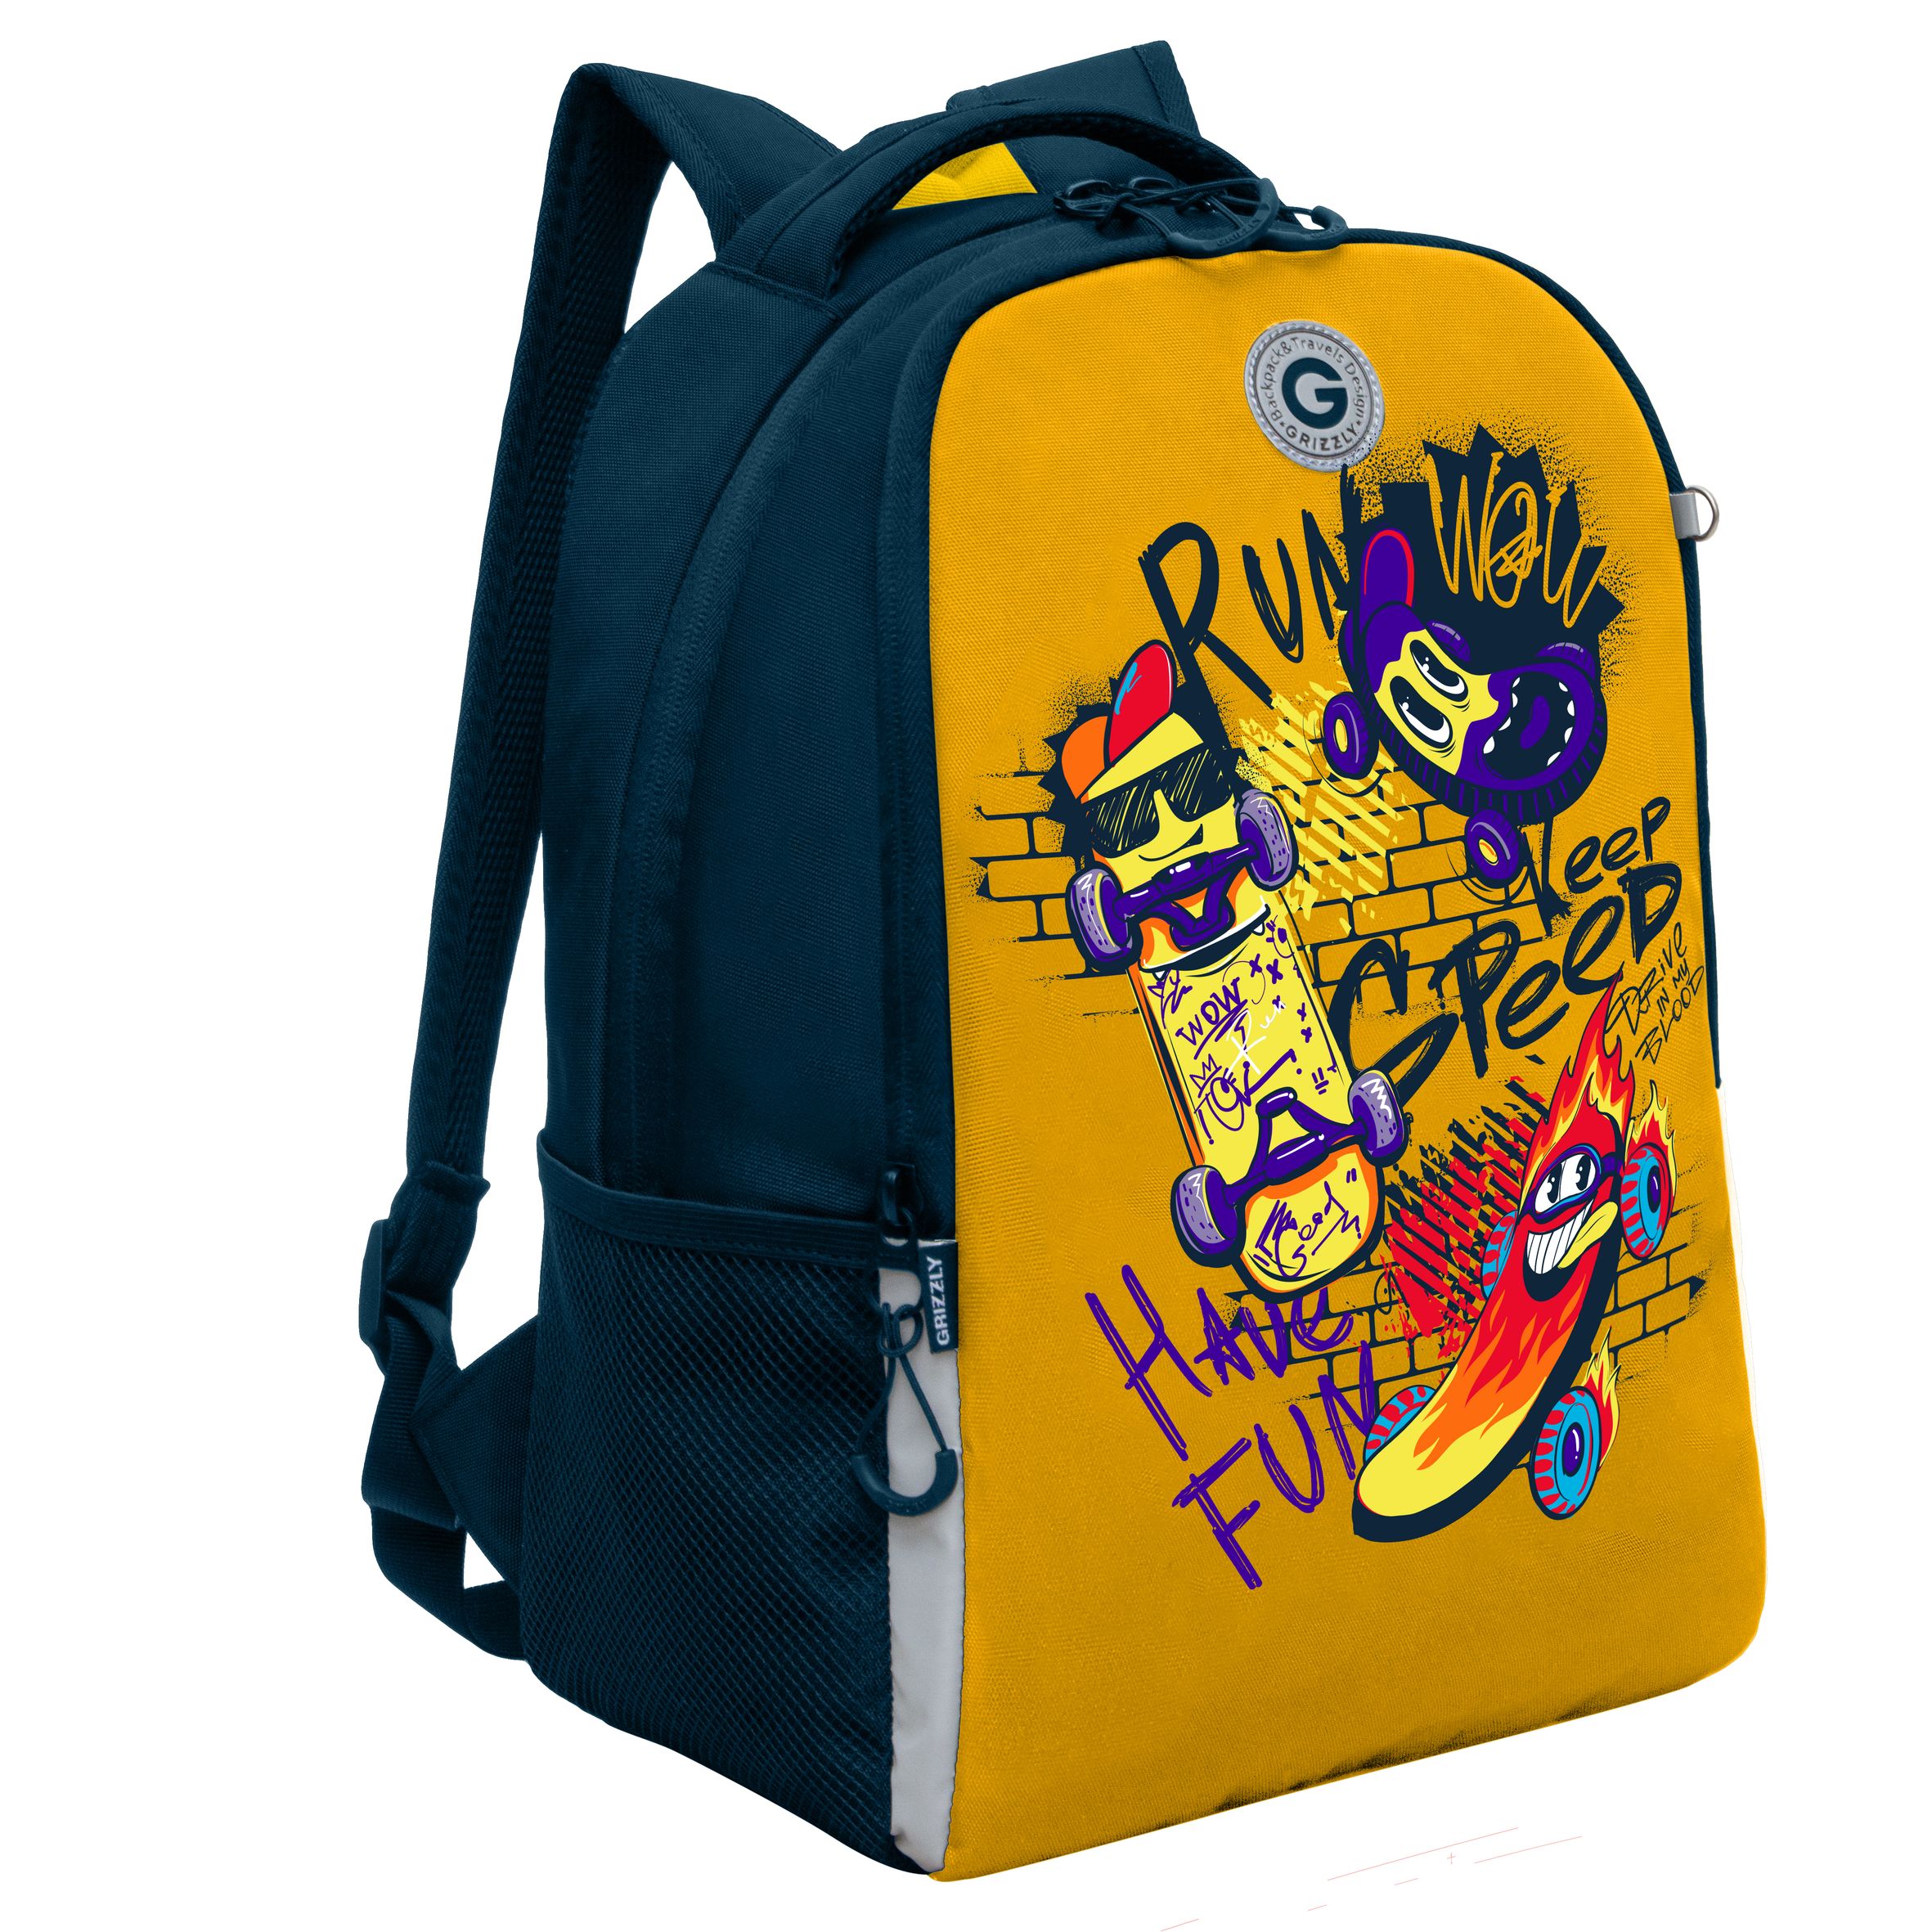 Рюкзак школьный GRIZZLY легкий с жесткой спинкой, 2 отделения, для мальчика RB-451-7/2 рюкзак школьный grizzly легкий с жесткой спинкой 2 отделения rb 451 5 1